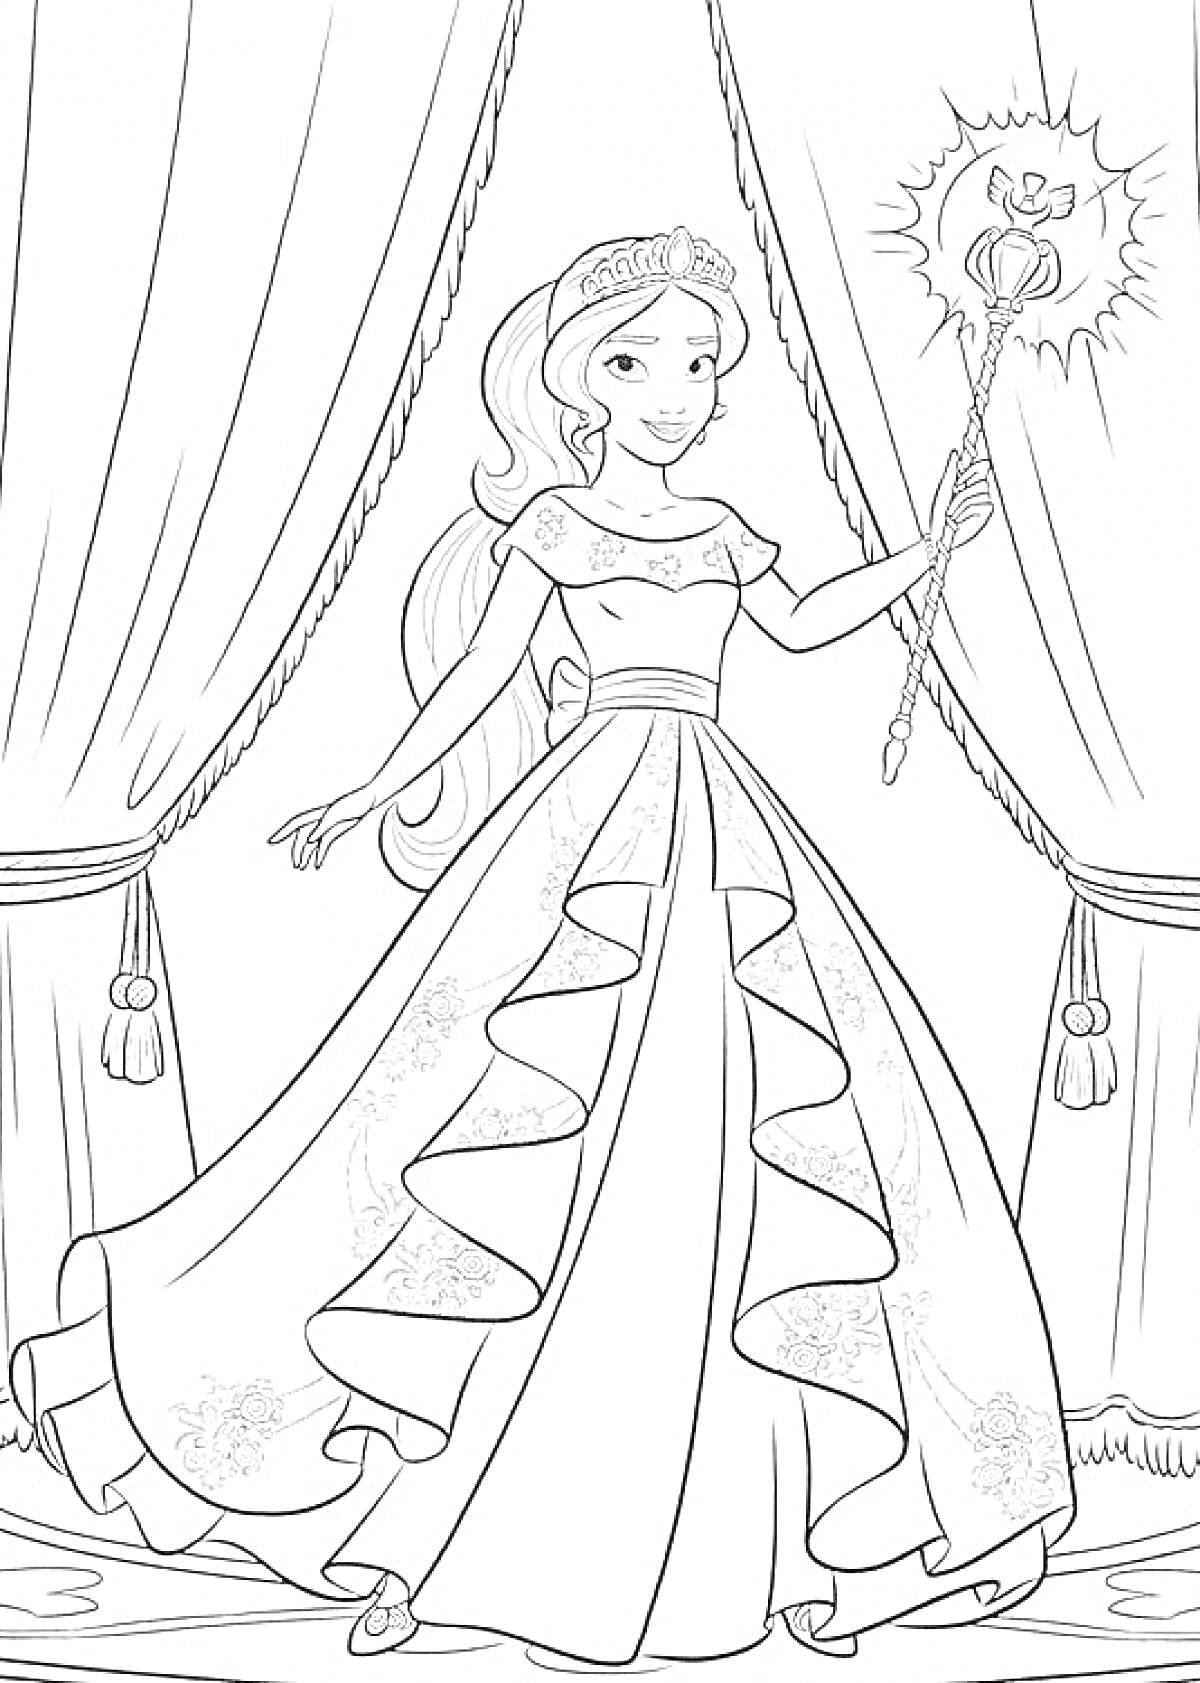 Елена из Авалора в королевском платье с жезлом на фоне занавесок